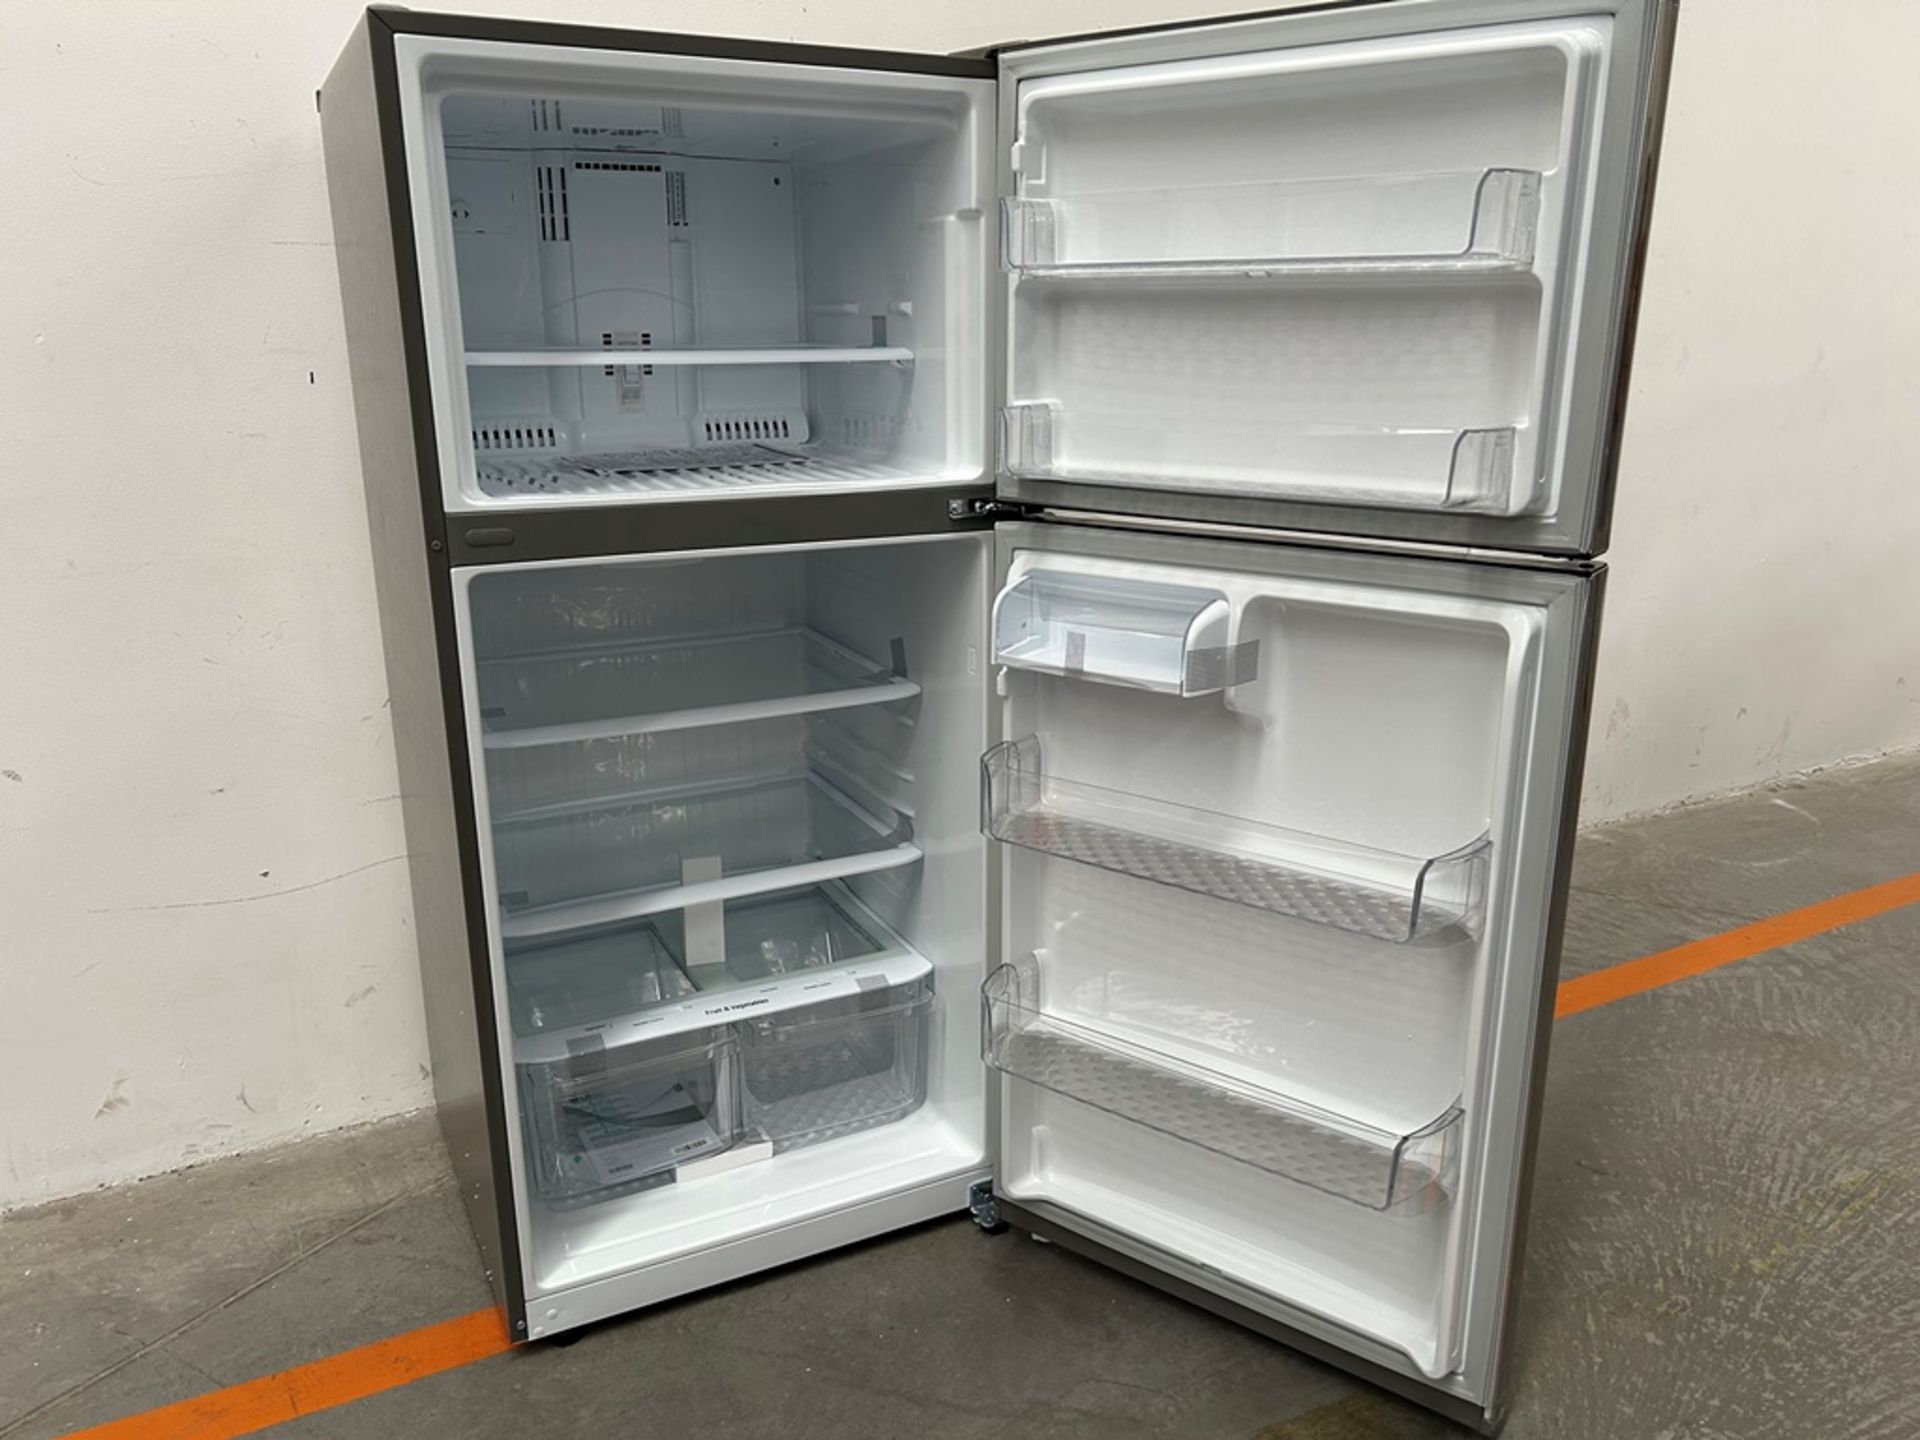 (NUEVO) Refrigerador Marca LG, Modelo LT57BPSX, Serie 29679, Color GRIS - Image 4 of 11